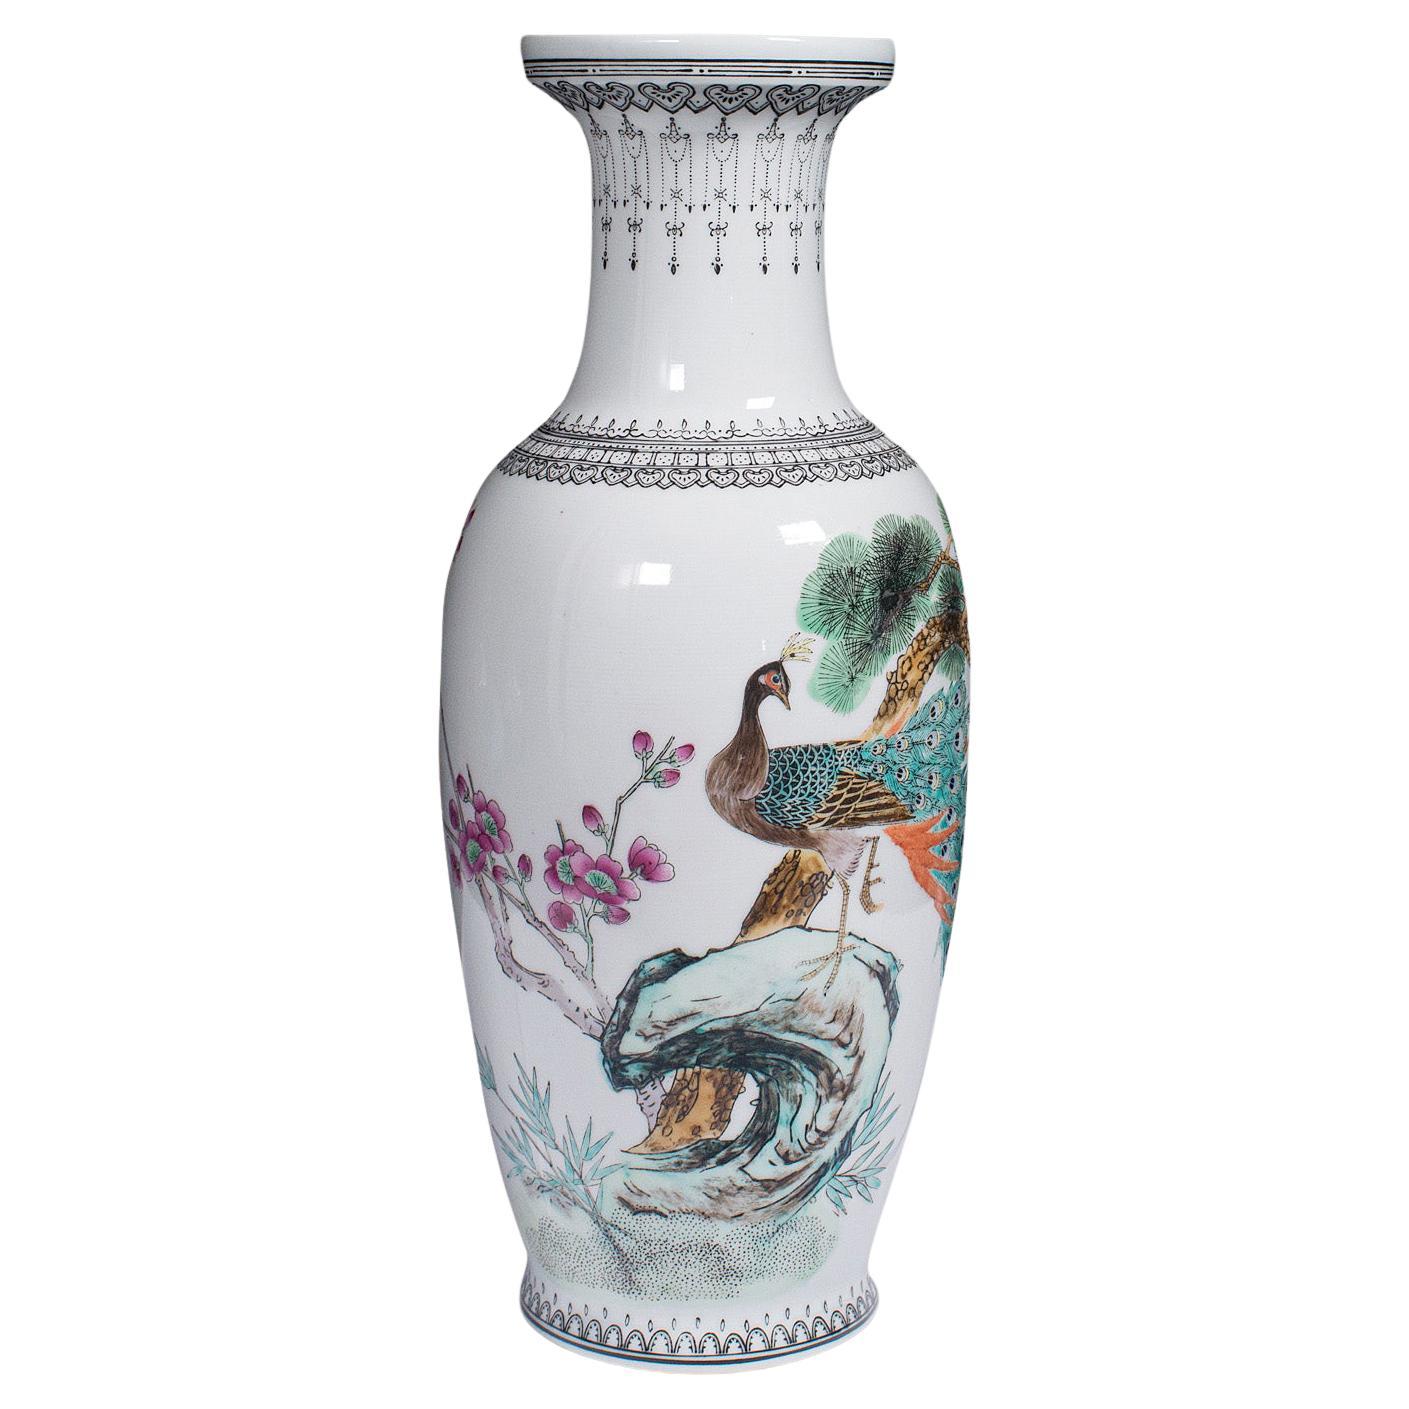 Vintage-Blumenvase, chinesisch, Keramik, dekorative Urne, Pfauenmotiv, um 1960